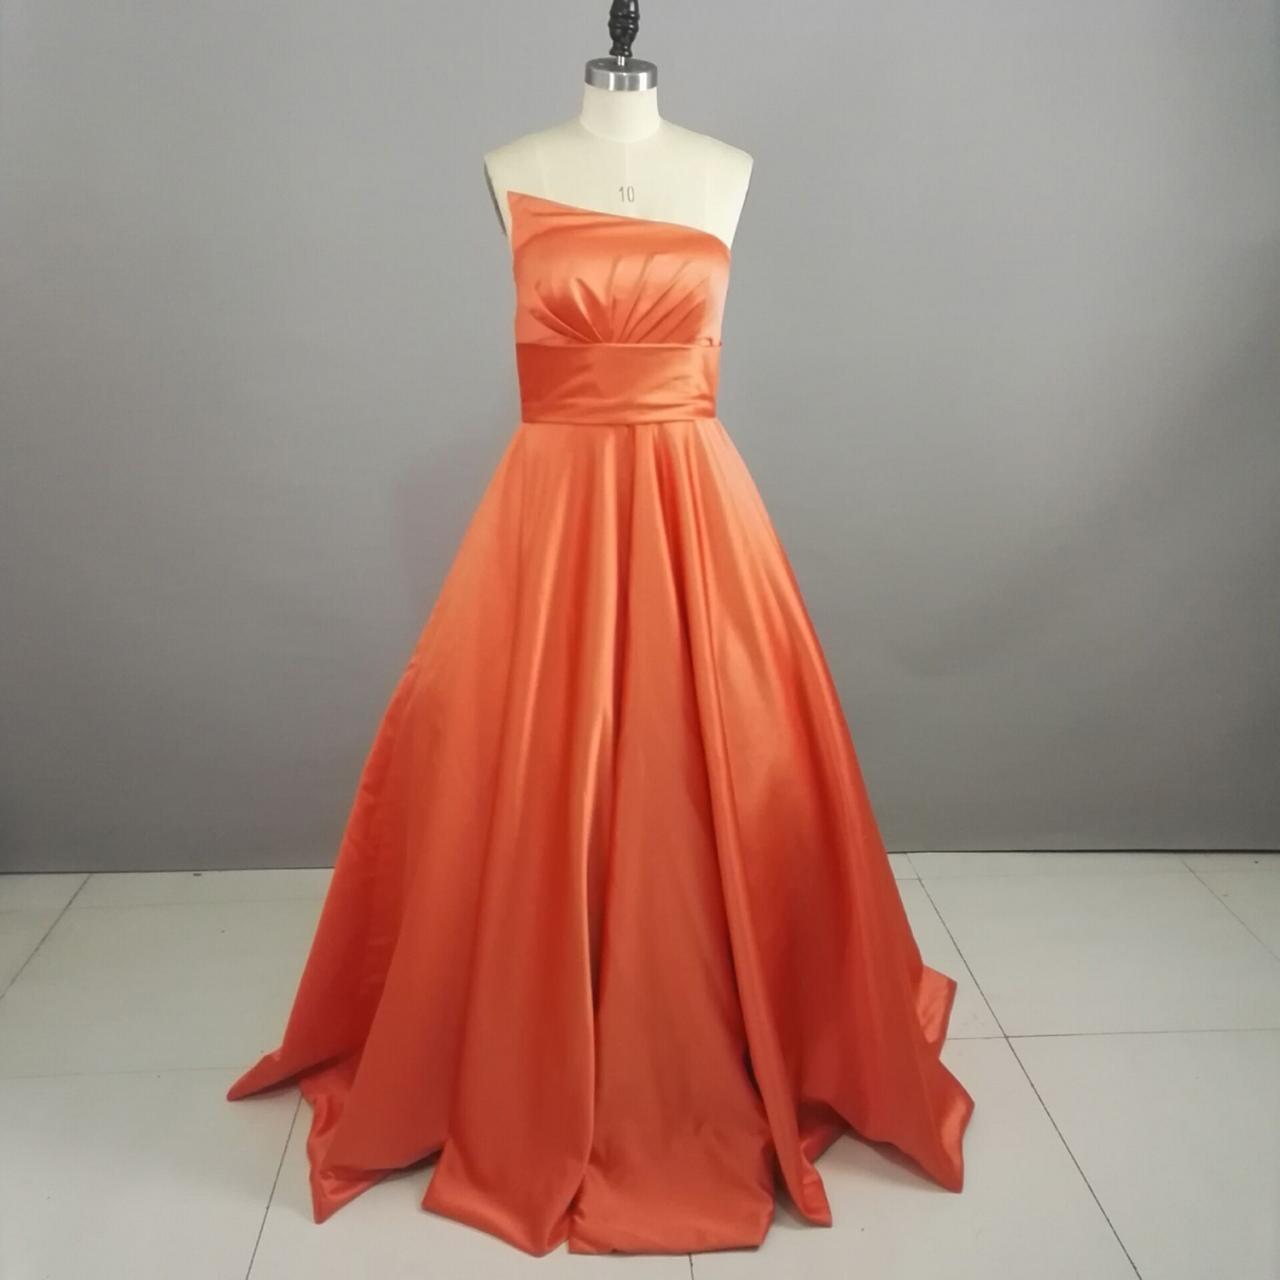 Strapless A-line Organza Satin Prom Dress Floor Length Women Evening Dress 2019